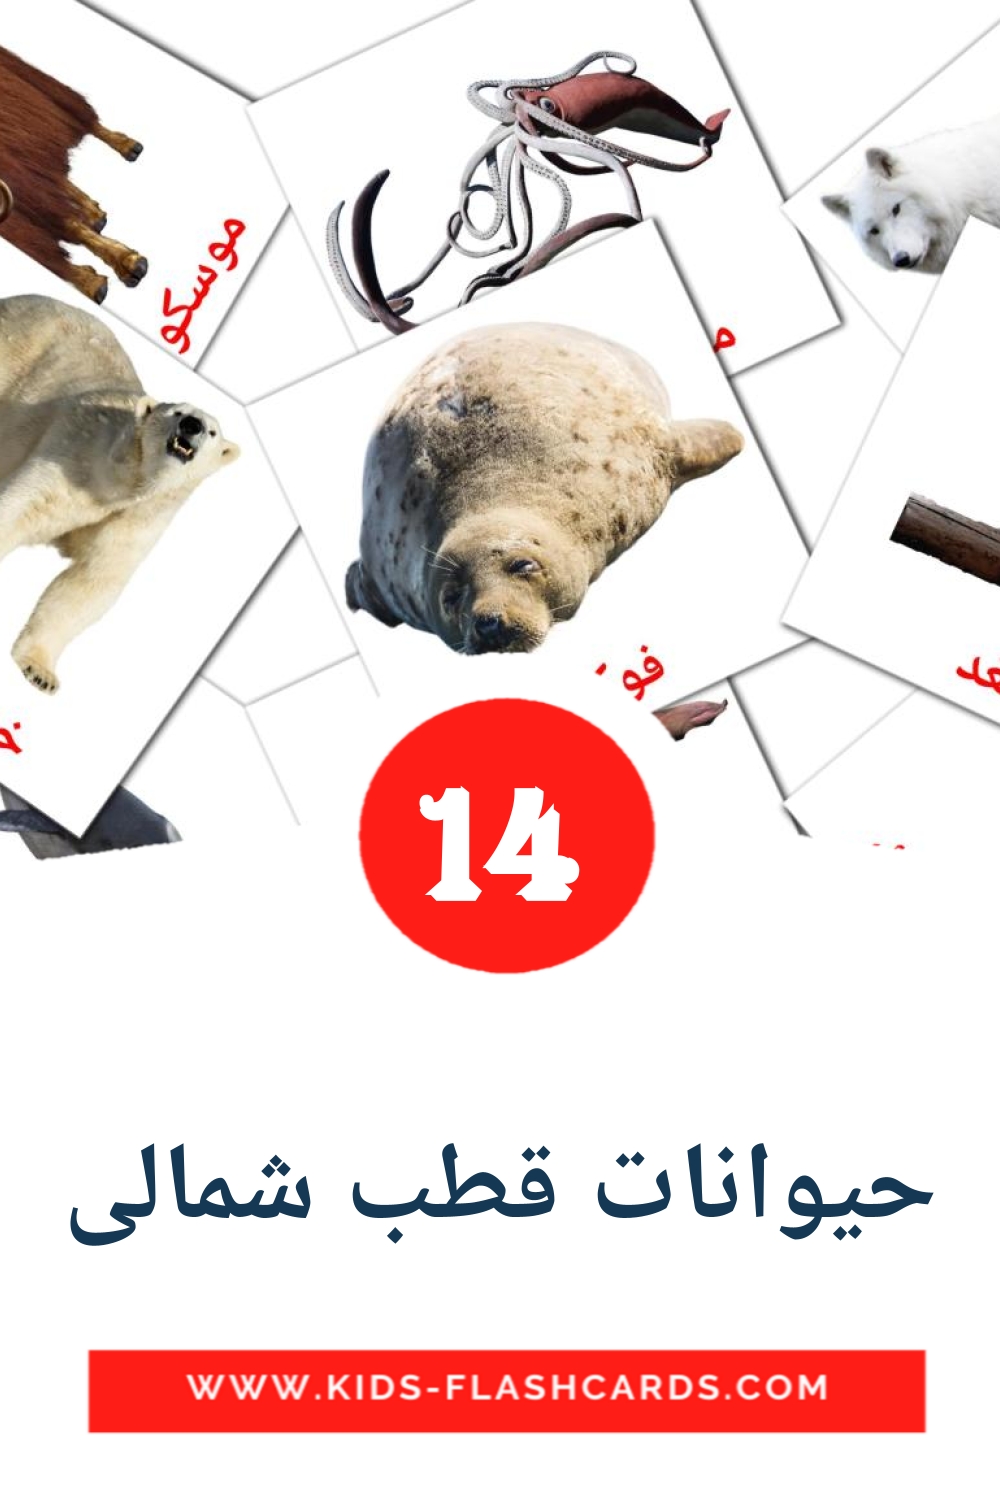 14 tarjetas didacticas de حیوانات قطب شمالی para el jardín de infancia en persa